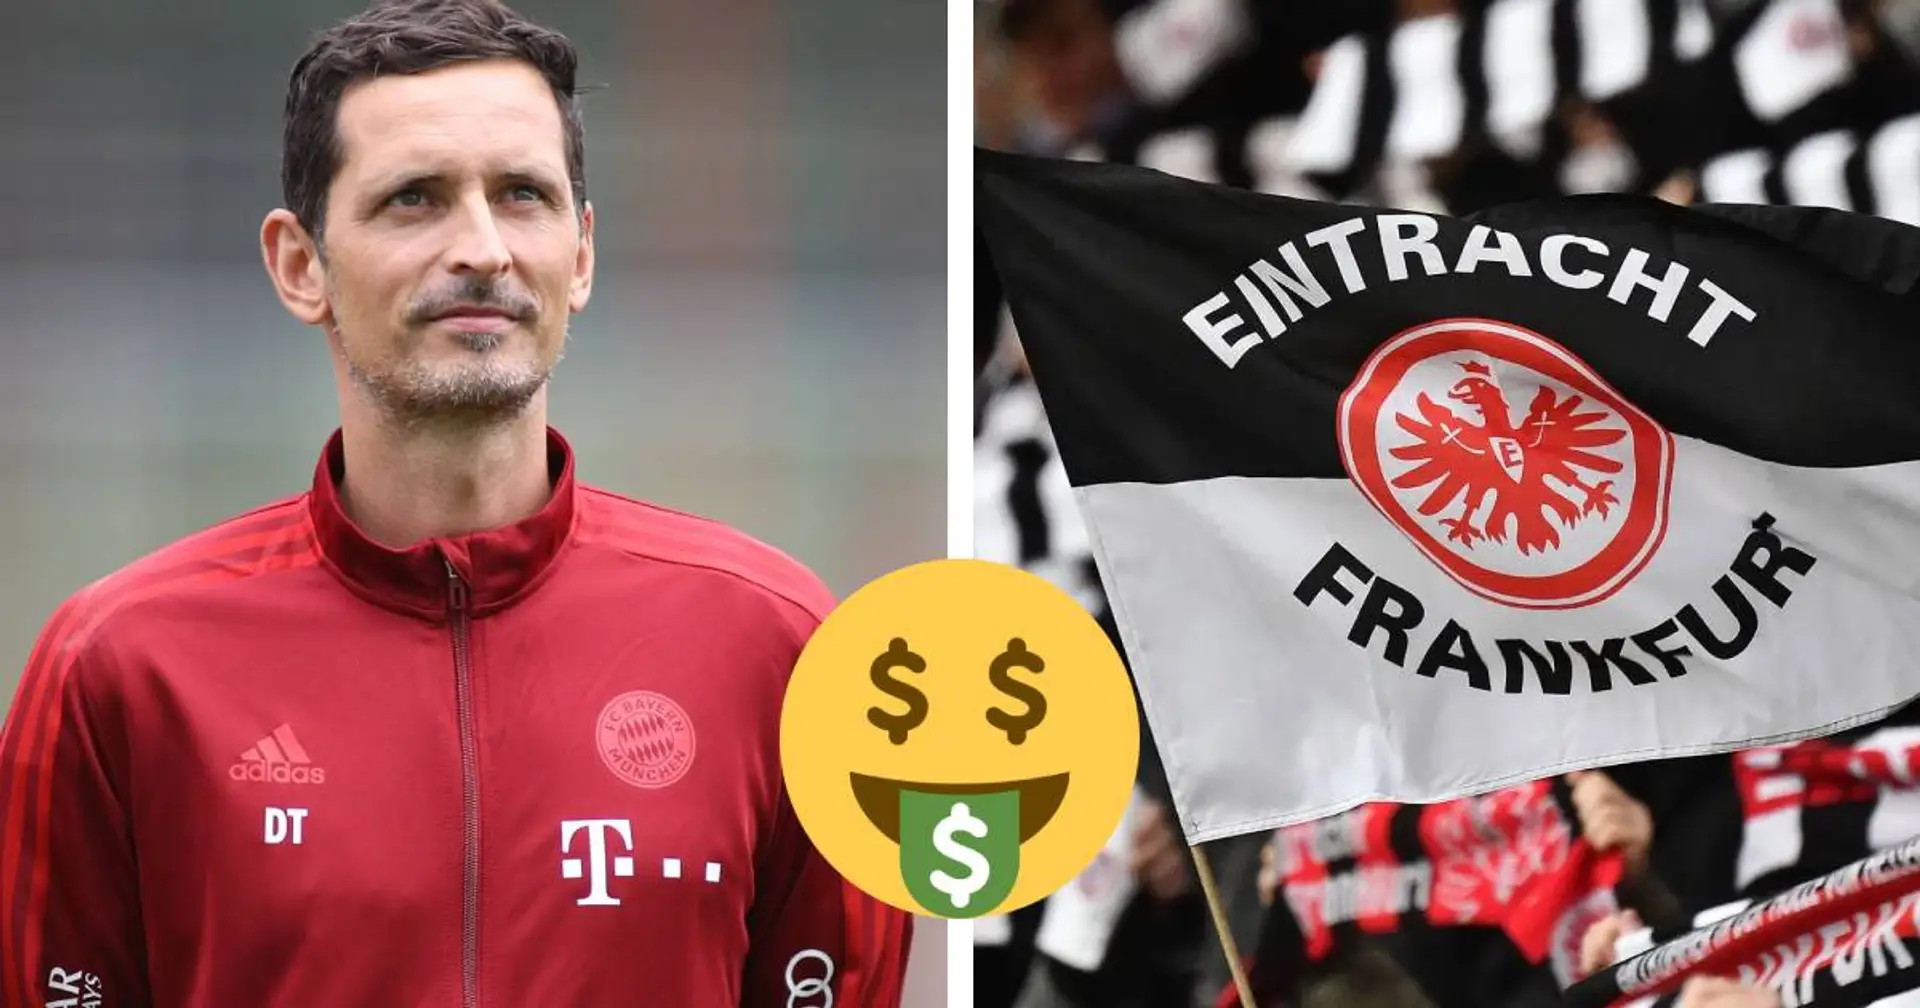 Falls Toppmöller die Eintracht übernimmt, müssten die Frankfurter eine Ablöse für ihn zahlen - Bericht